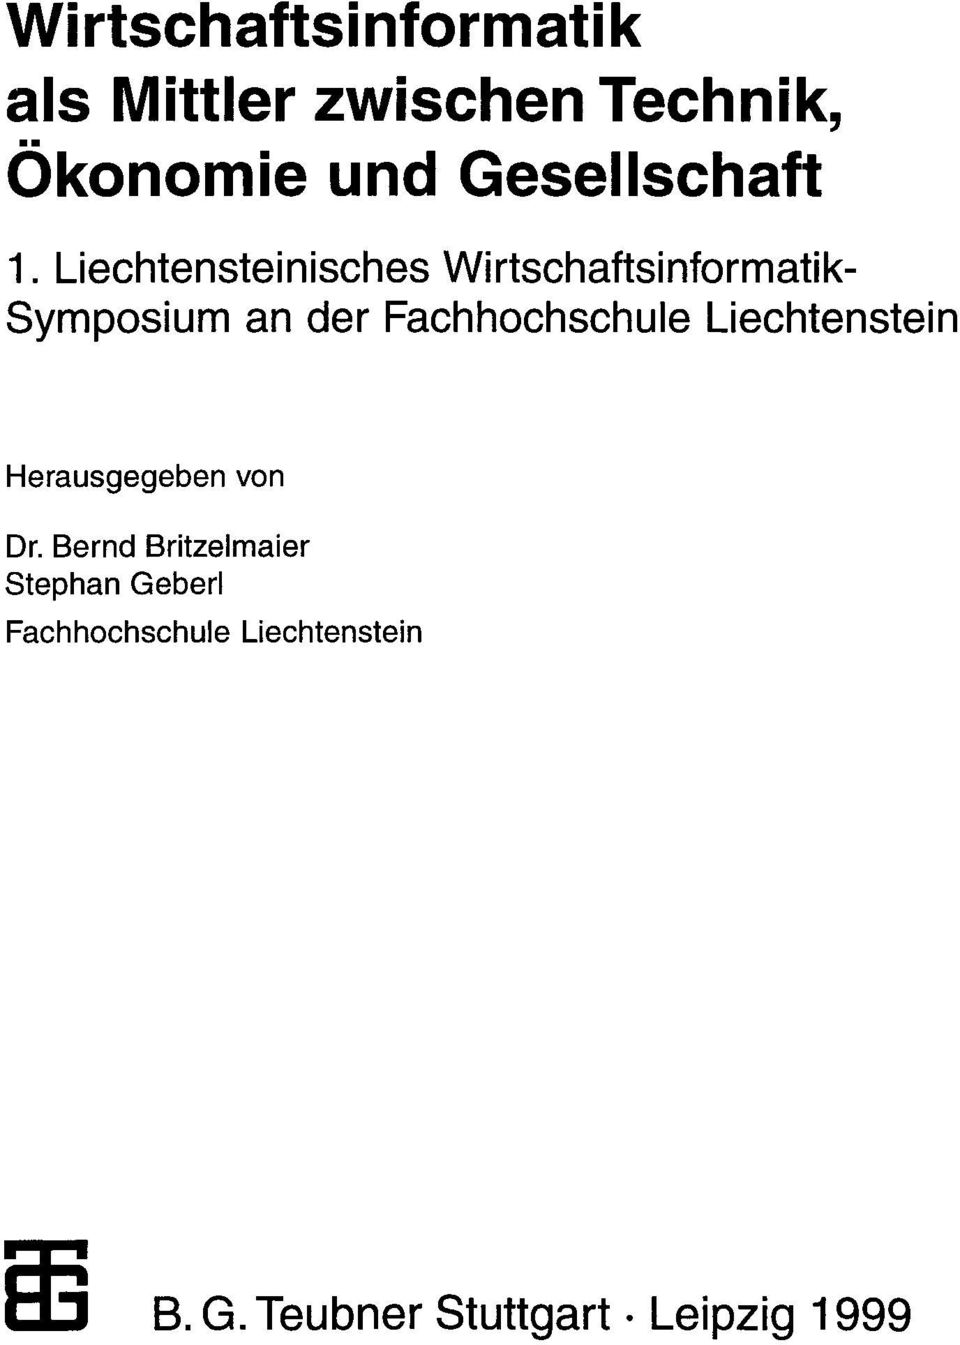 Liechtensteinisches Wirtschaftsinformatik Symposium an der Fachhochschule